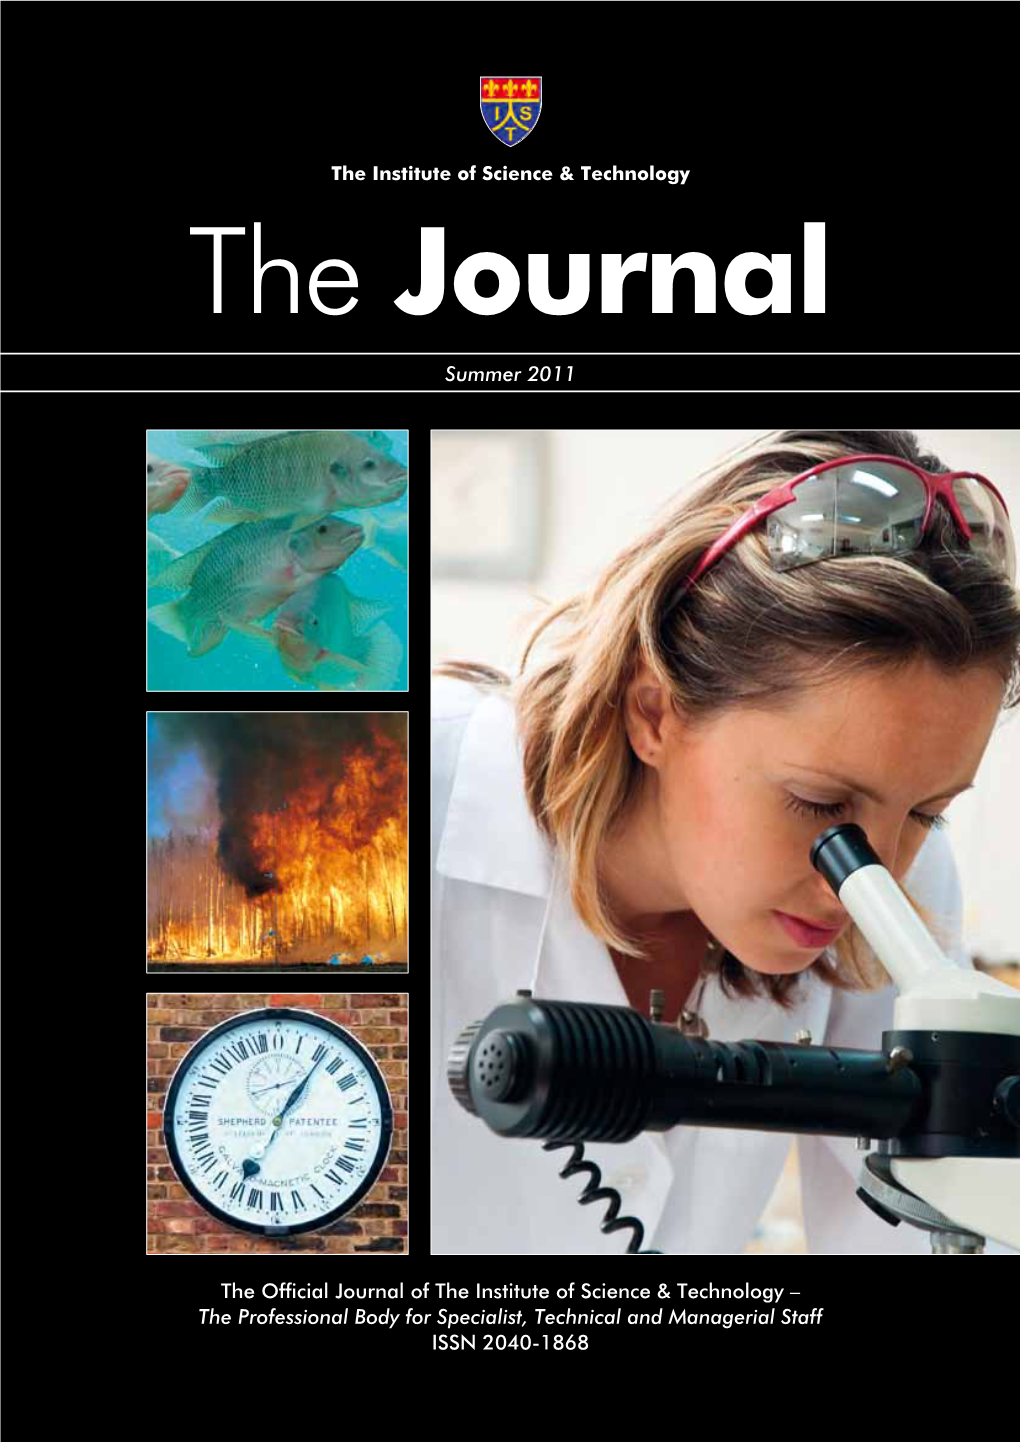 IST Journal 2011 – Summer